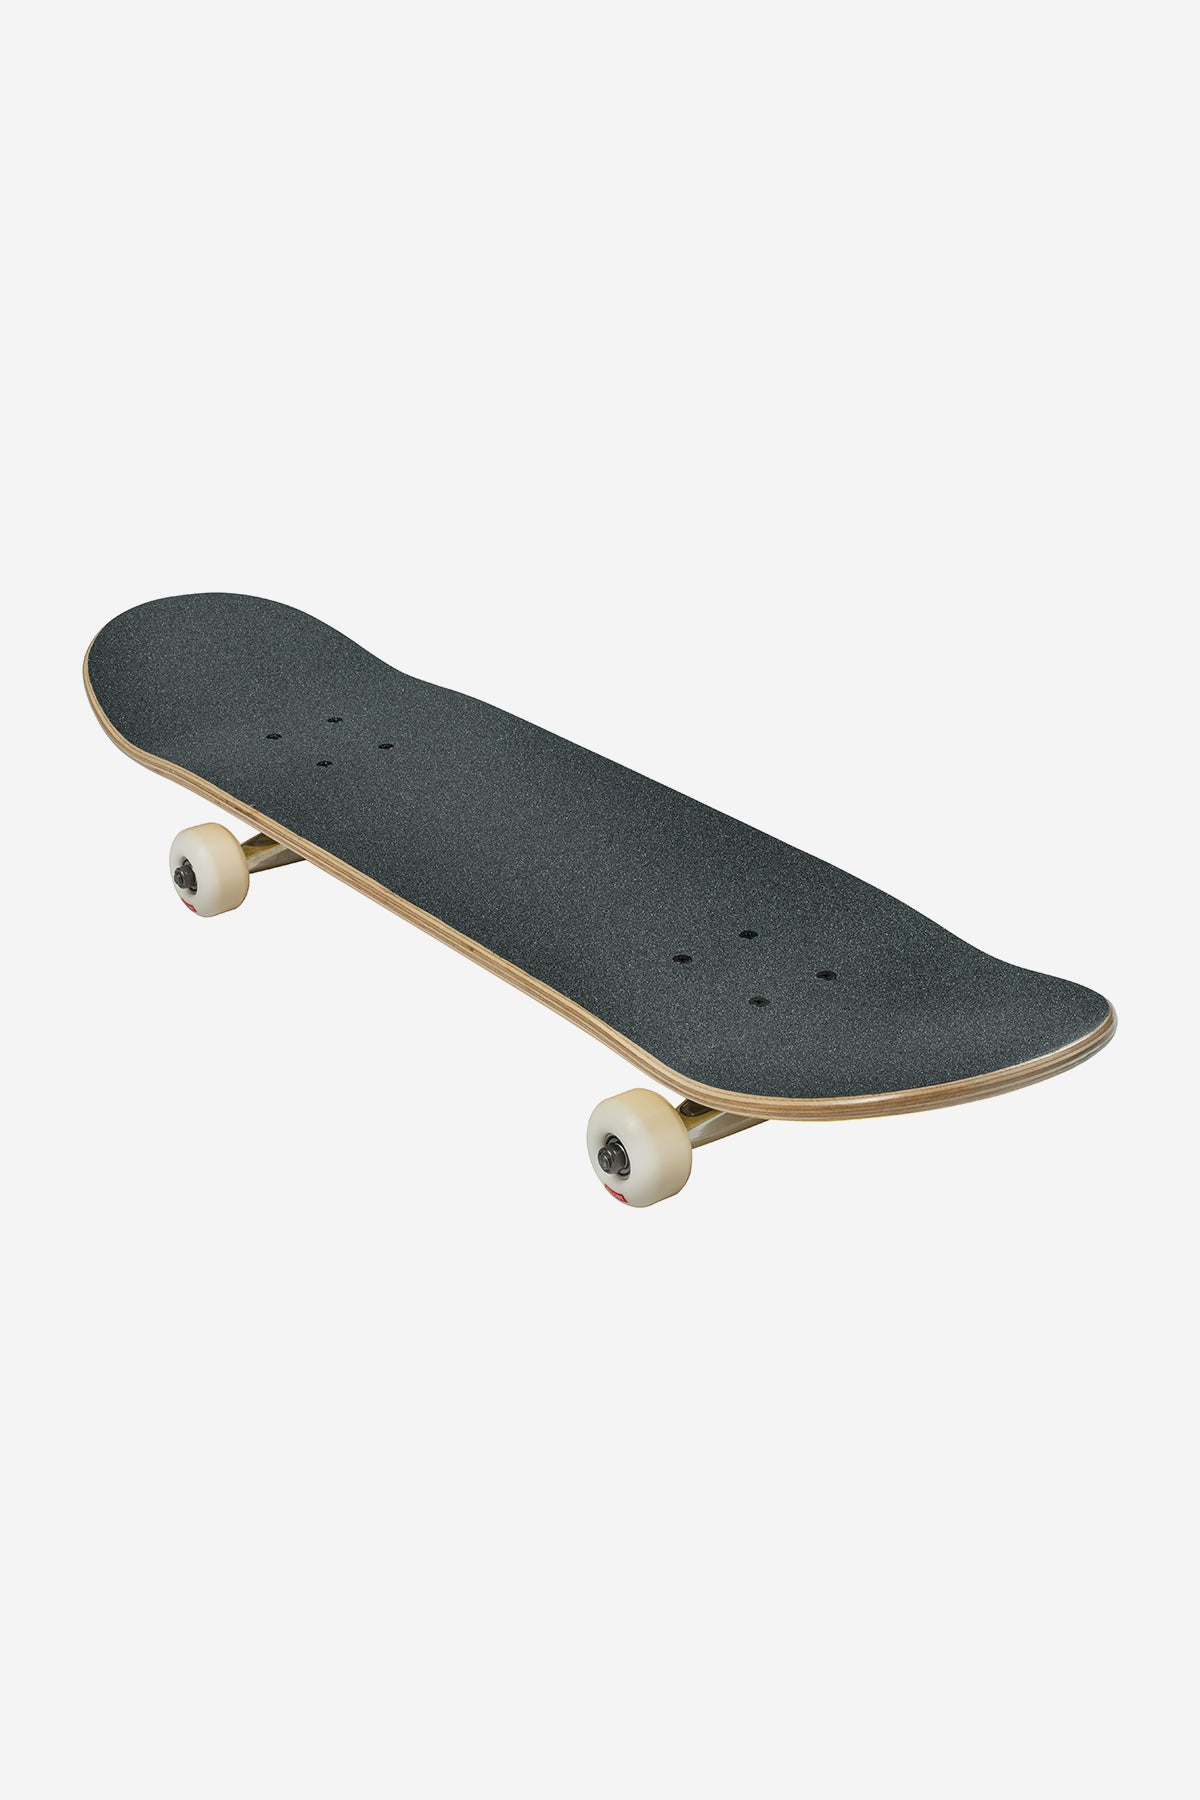 Globe - Goodstock - Sahara- 8.375" Komplett Skateboard